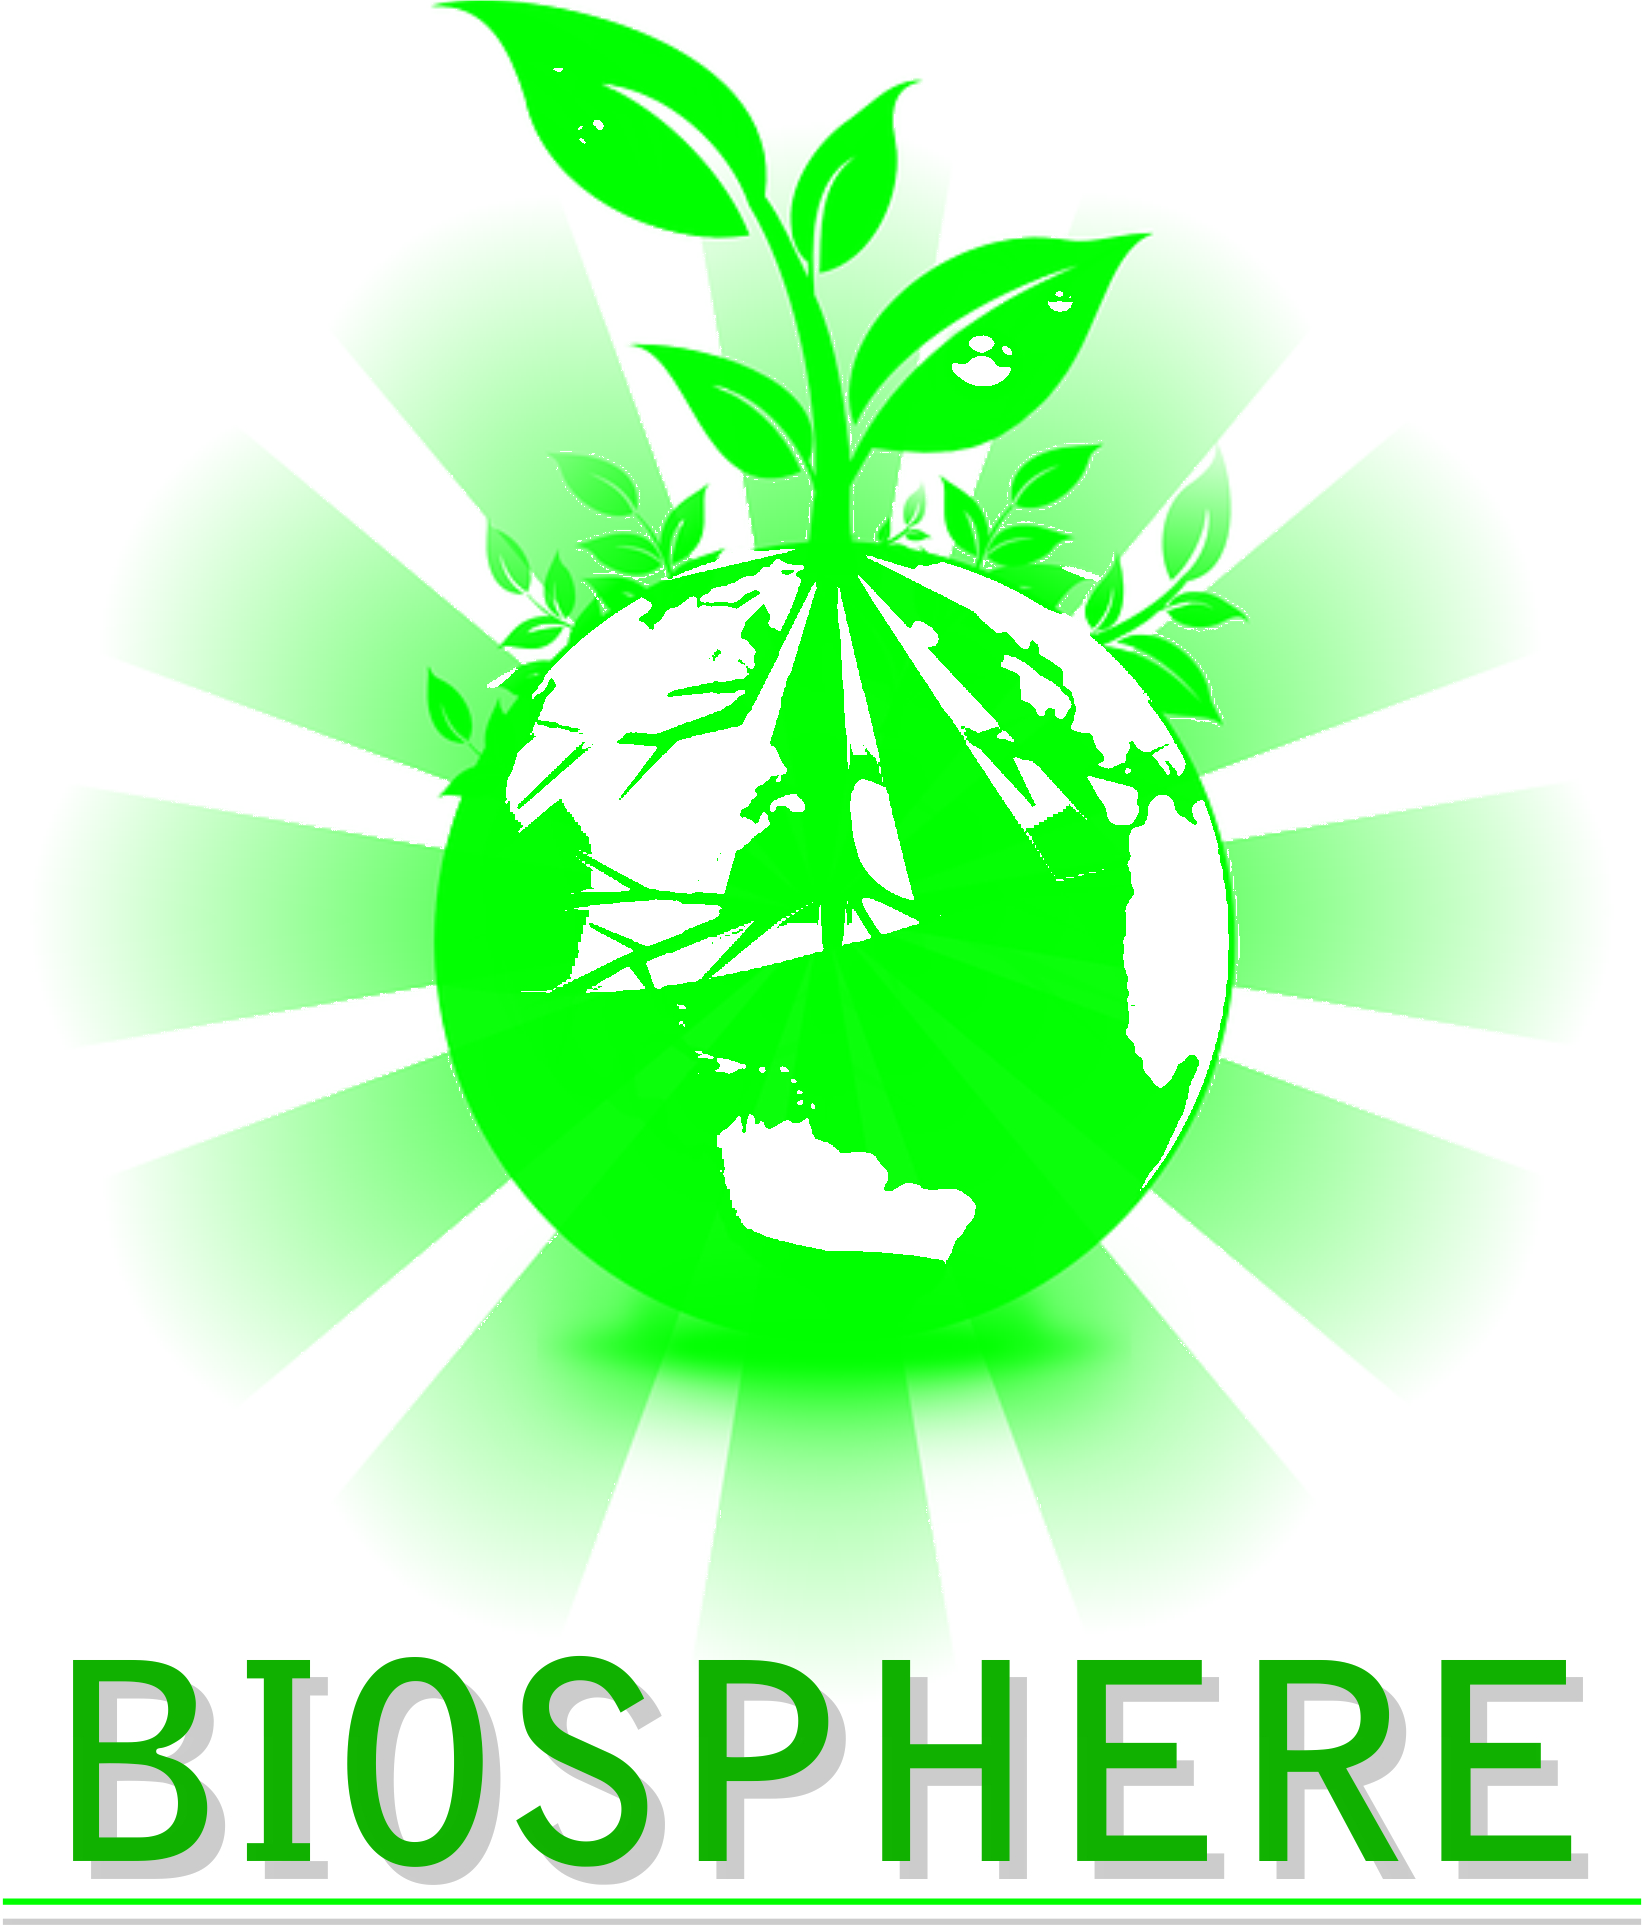 Pssemr School Biosphere club